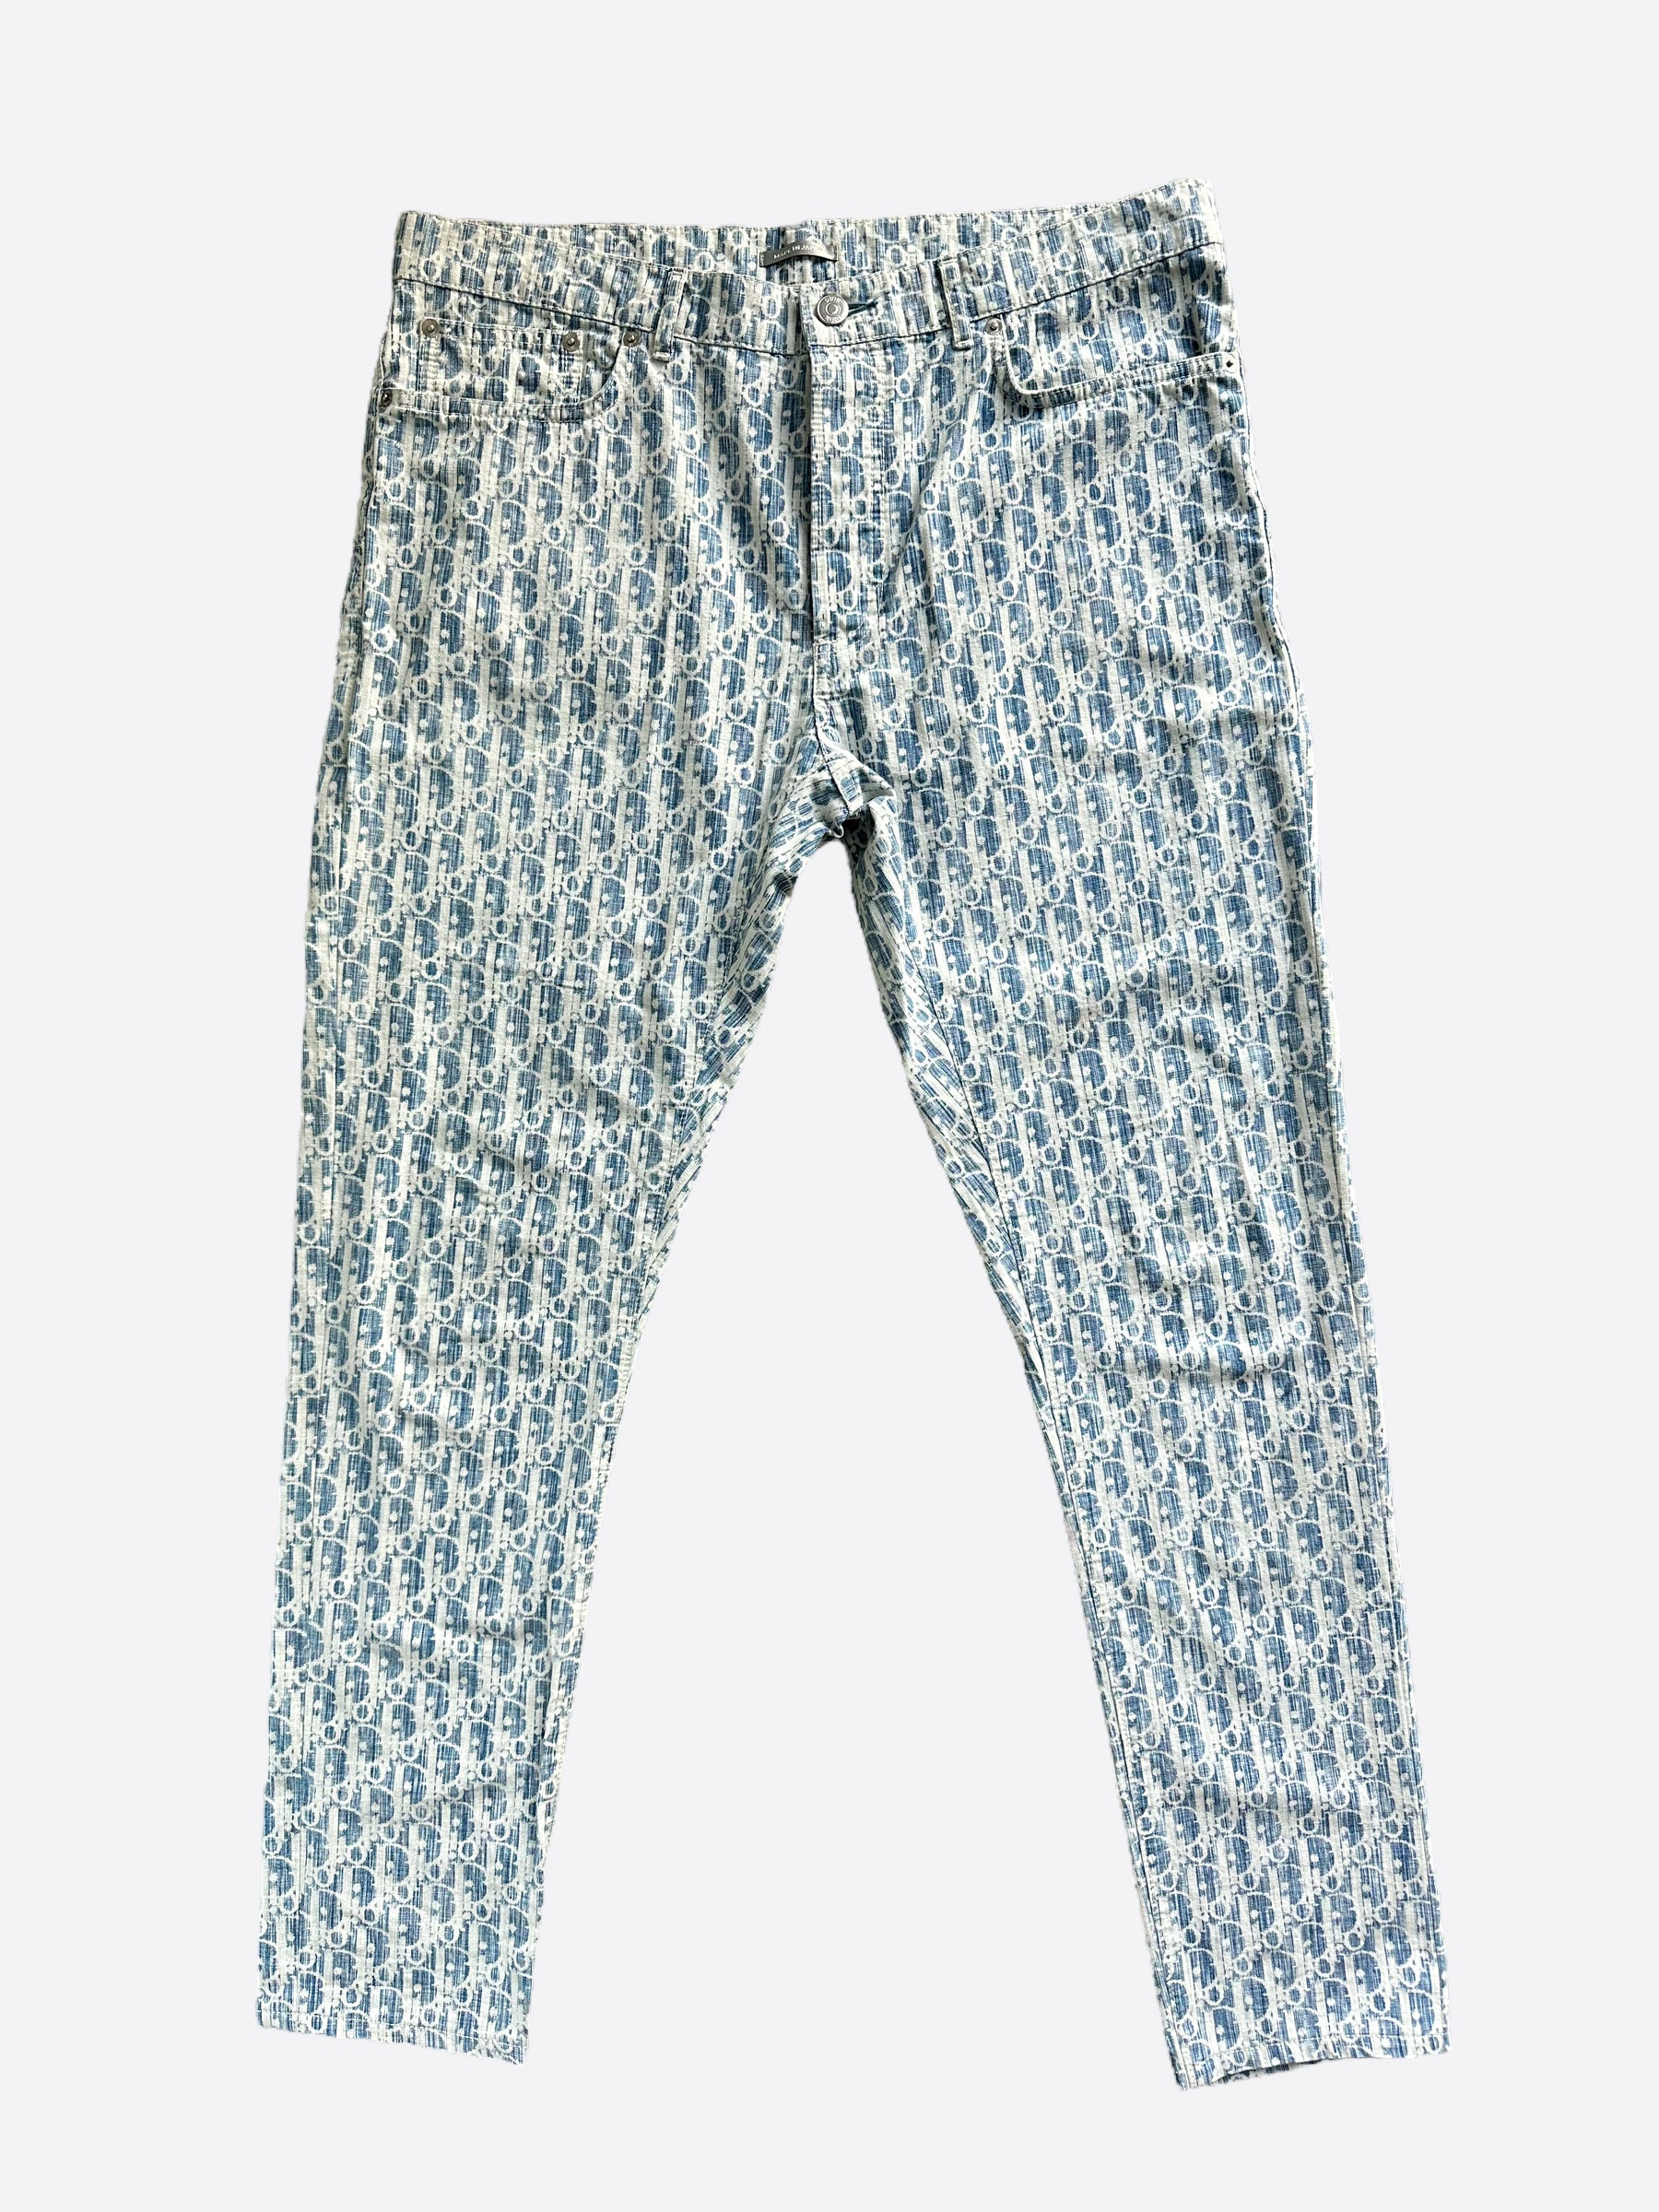 Dior Men's Long Slim-Fit Oblique Jeans